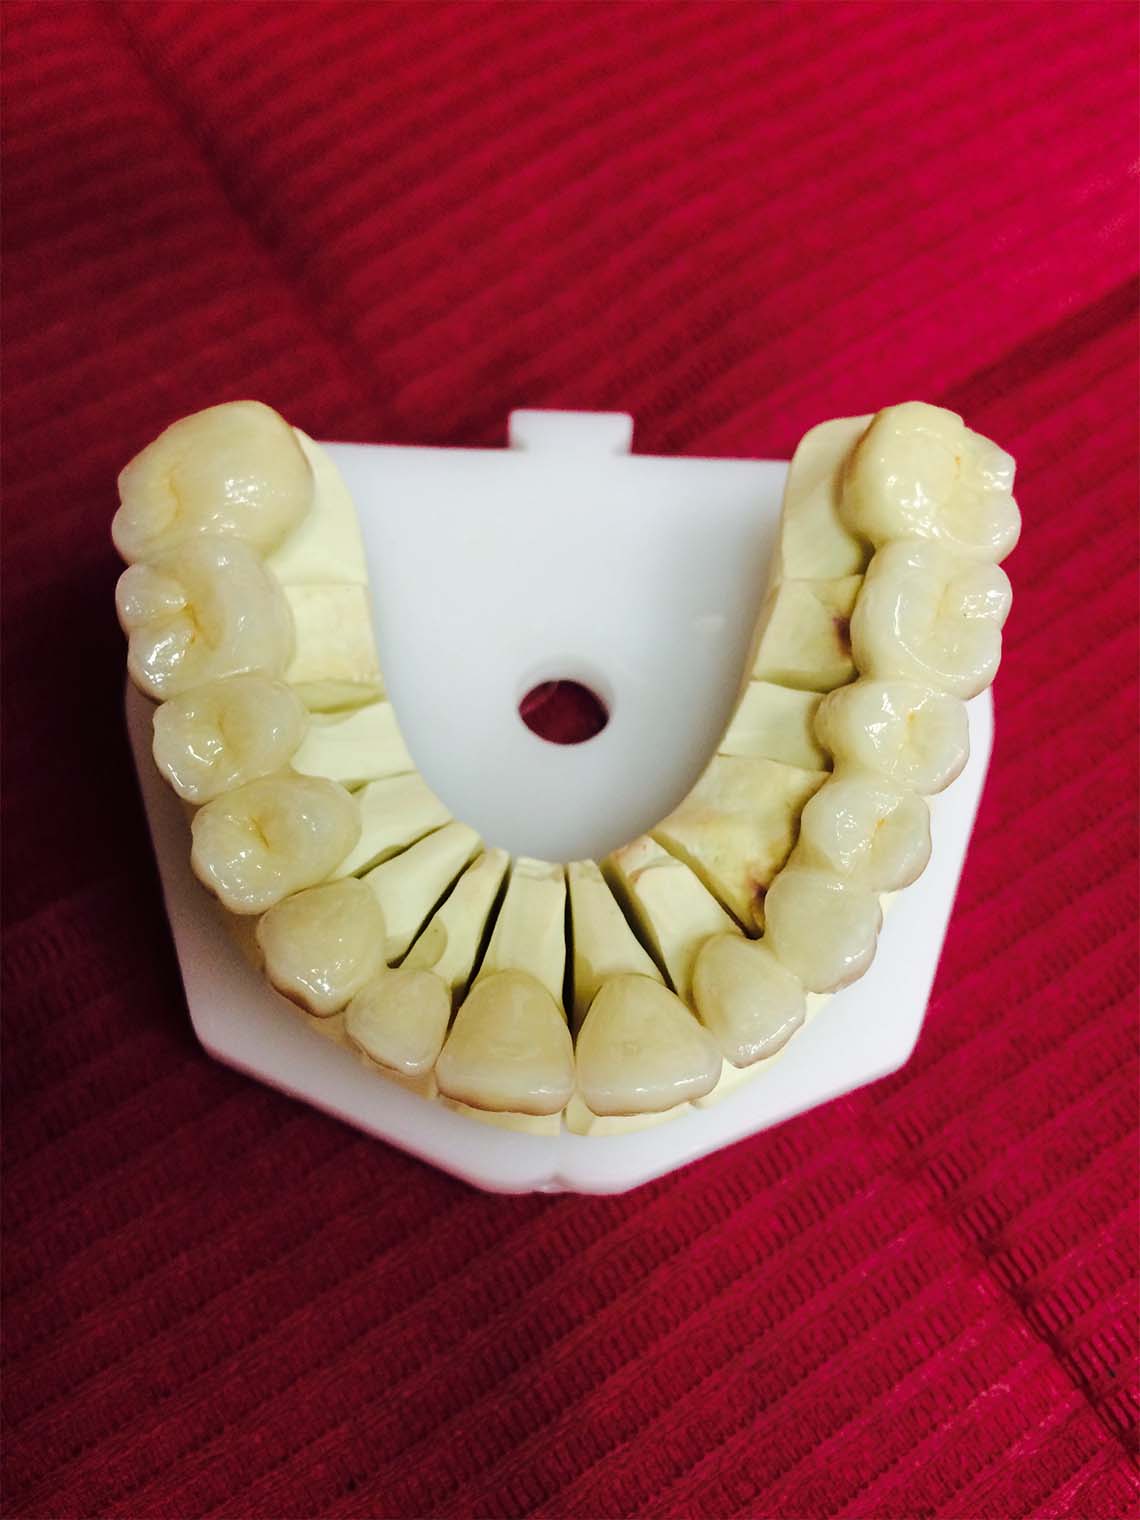 Proteza zębowa